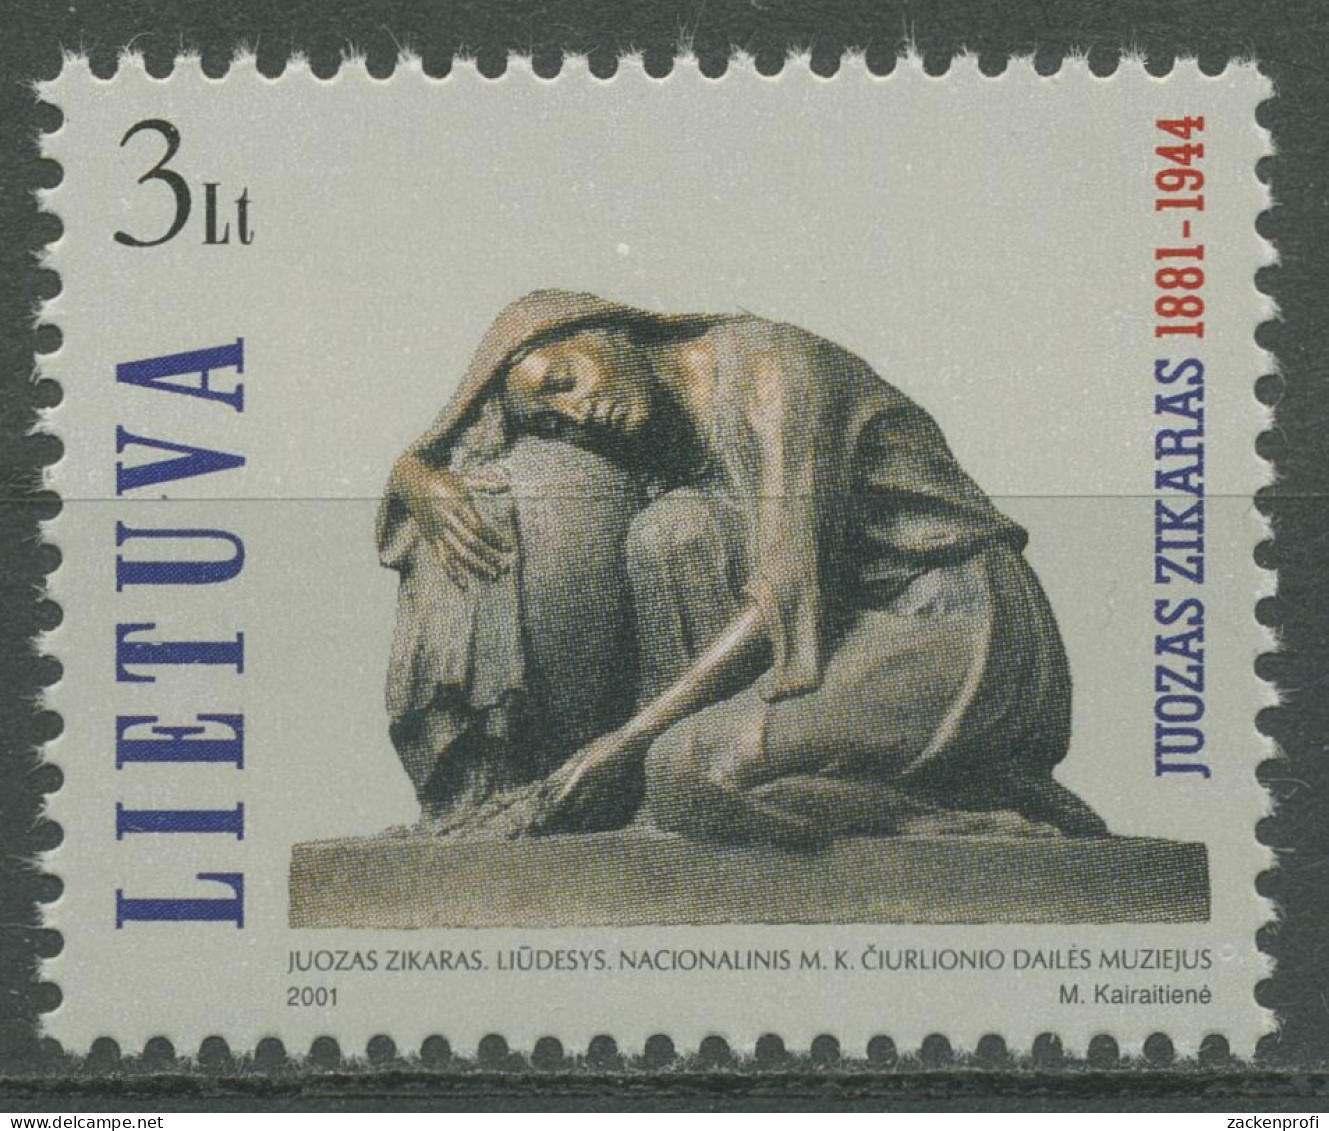 Litauen 2001 Bildhauer Juozas Zikaras Skulptur 772 Postfrisch - Litauen